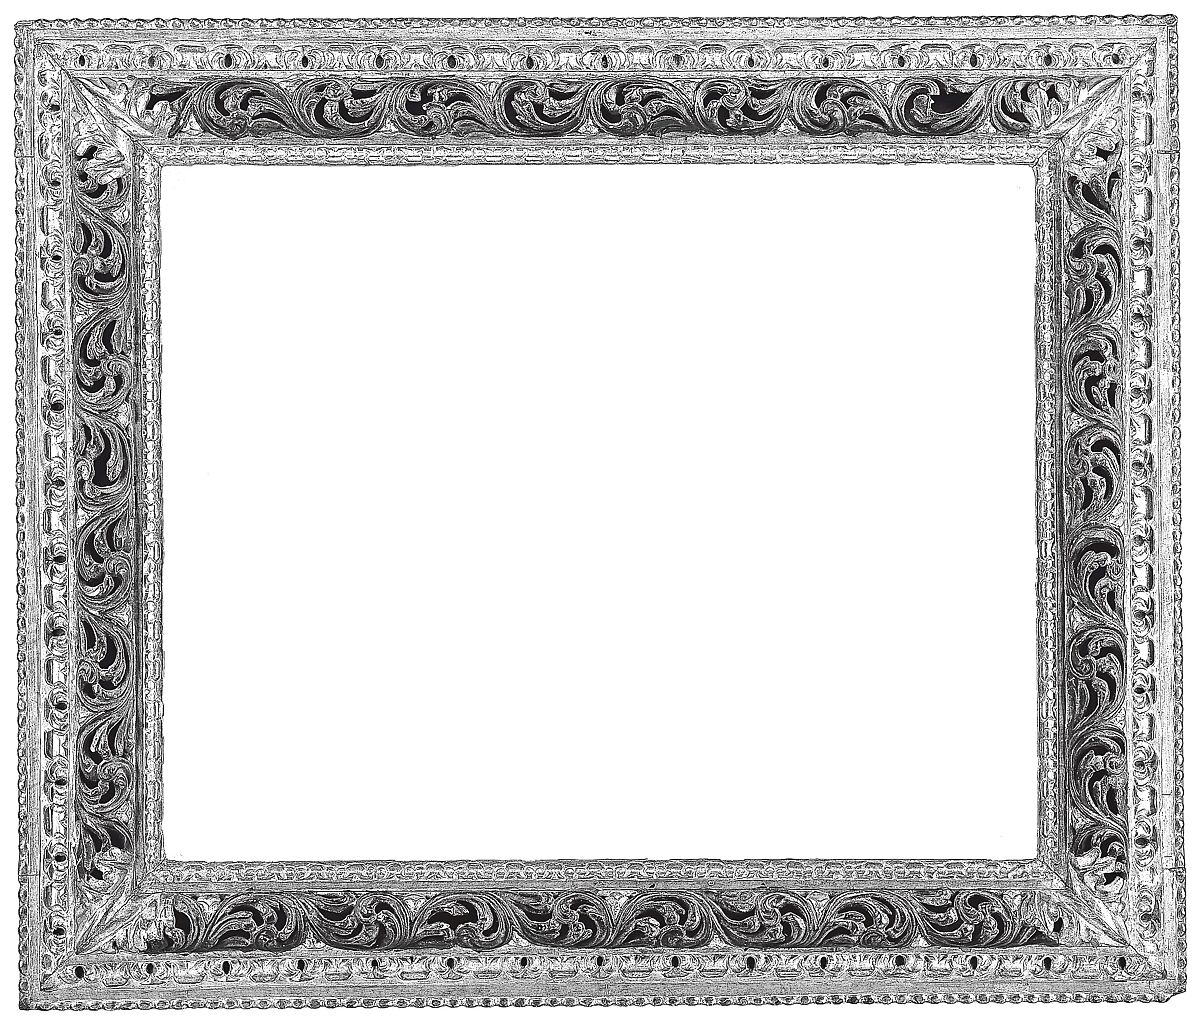 Wreath frame (pair with 1975.1.2127), Spruce, Italian, Venice 